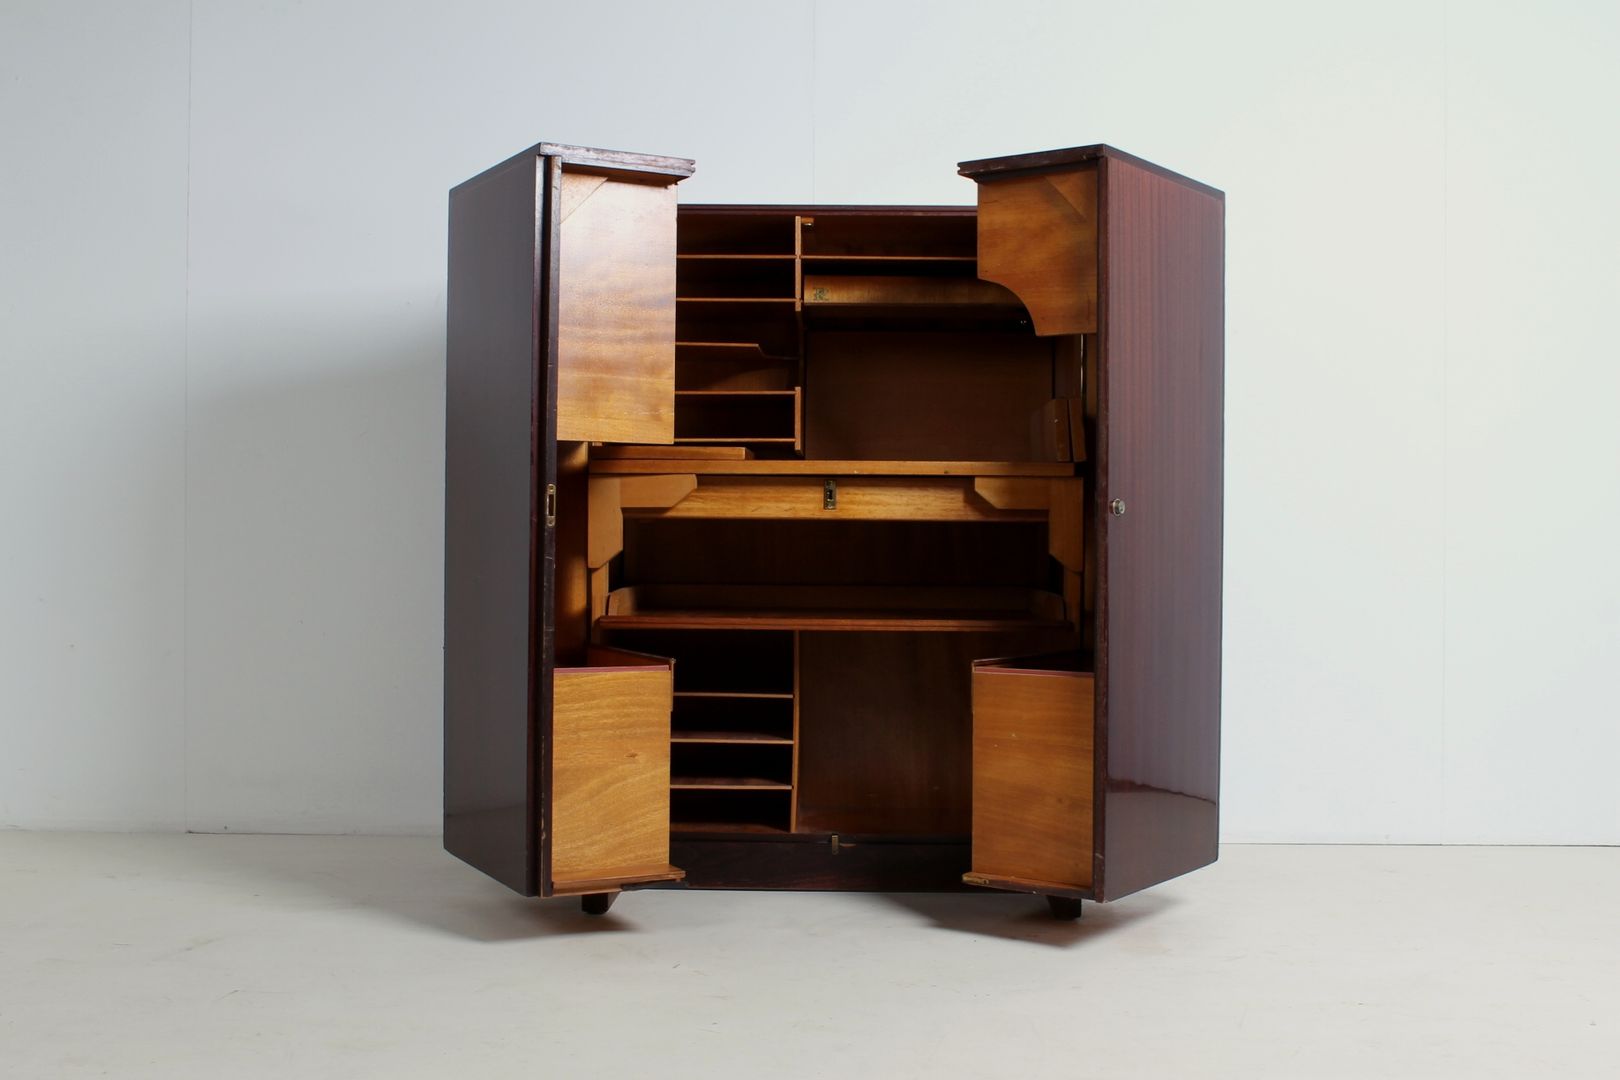 Möbel/Schreibbüro von Mummenthaler & Meier., func. functional furniture func. functional furniture Rustic style study/office Desks